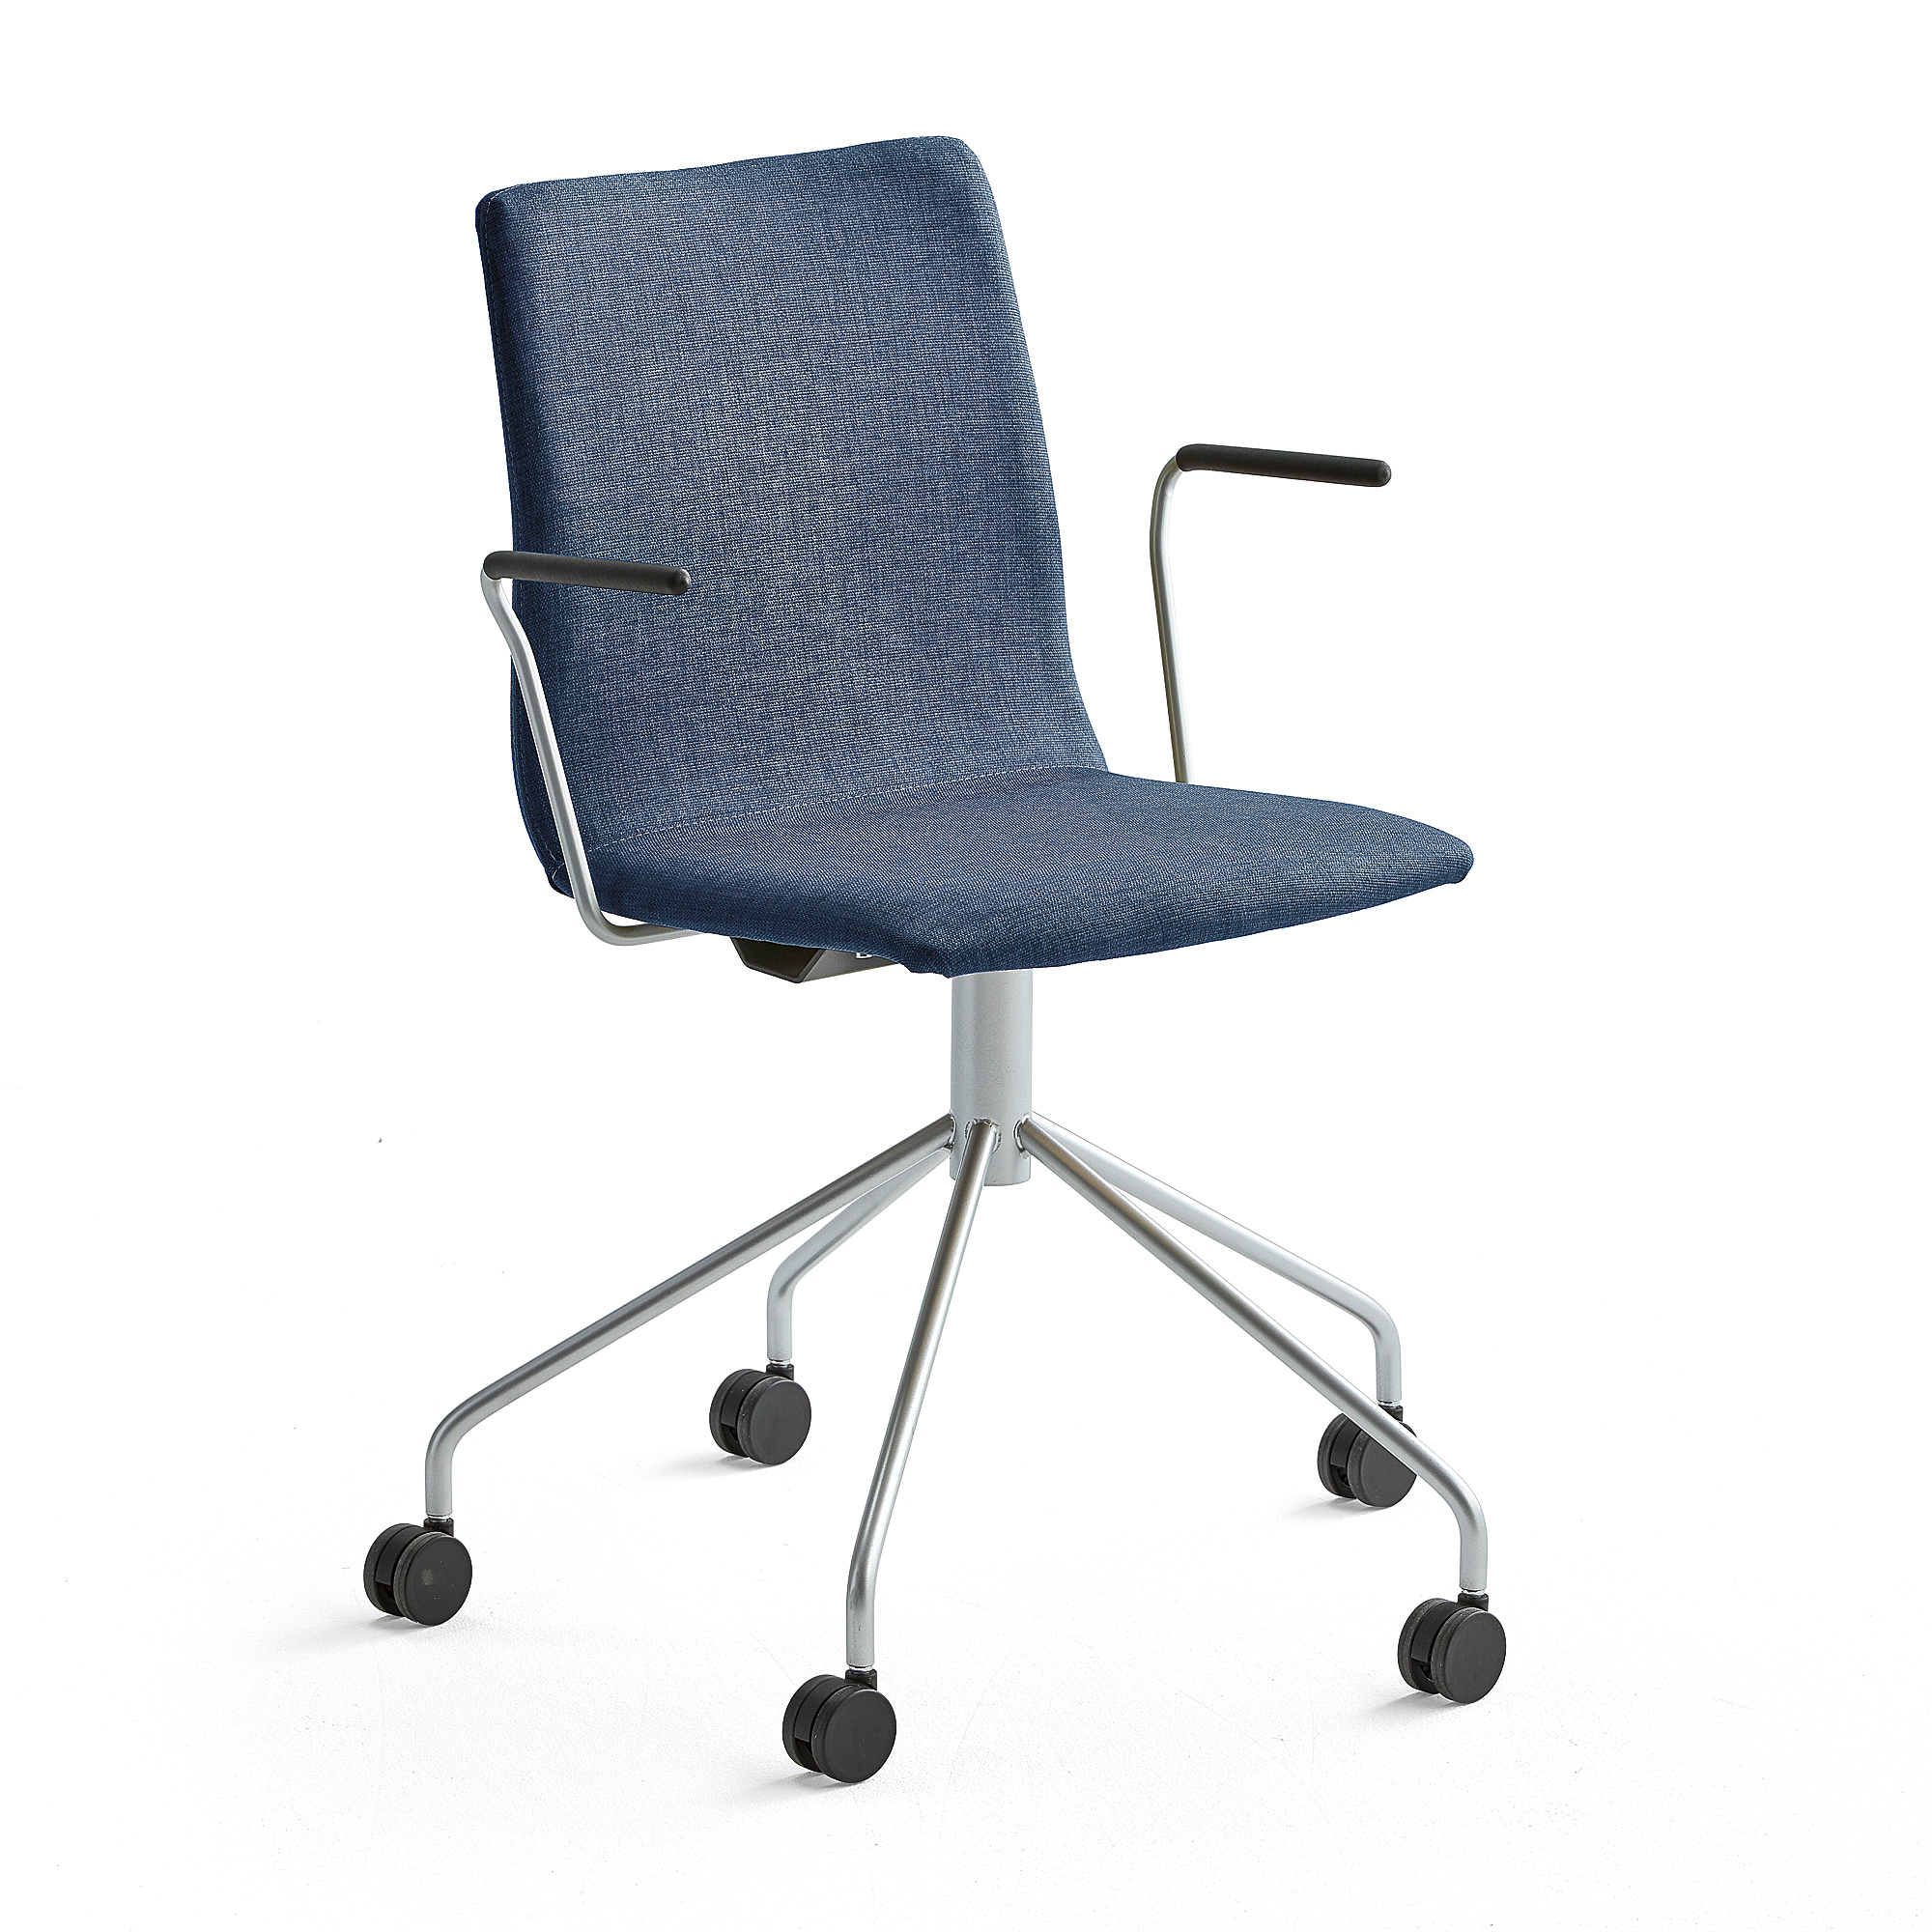 Konferenčná stolička OTTAWA, s kolieskami a opierkami rúk, modrá/šedá